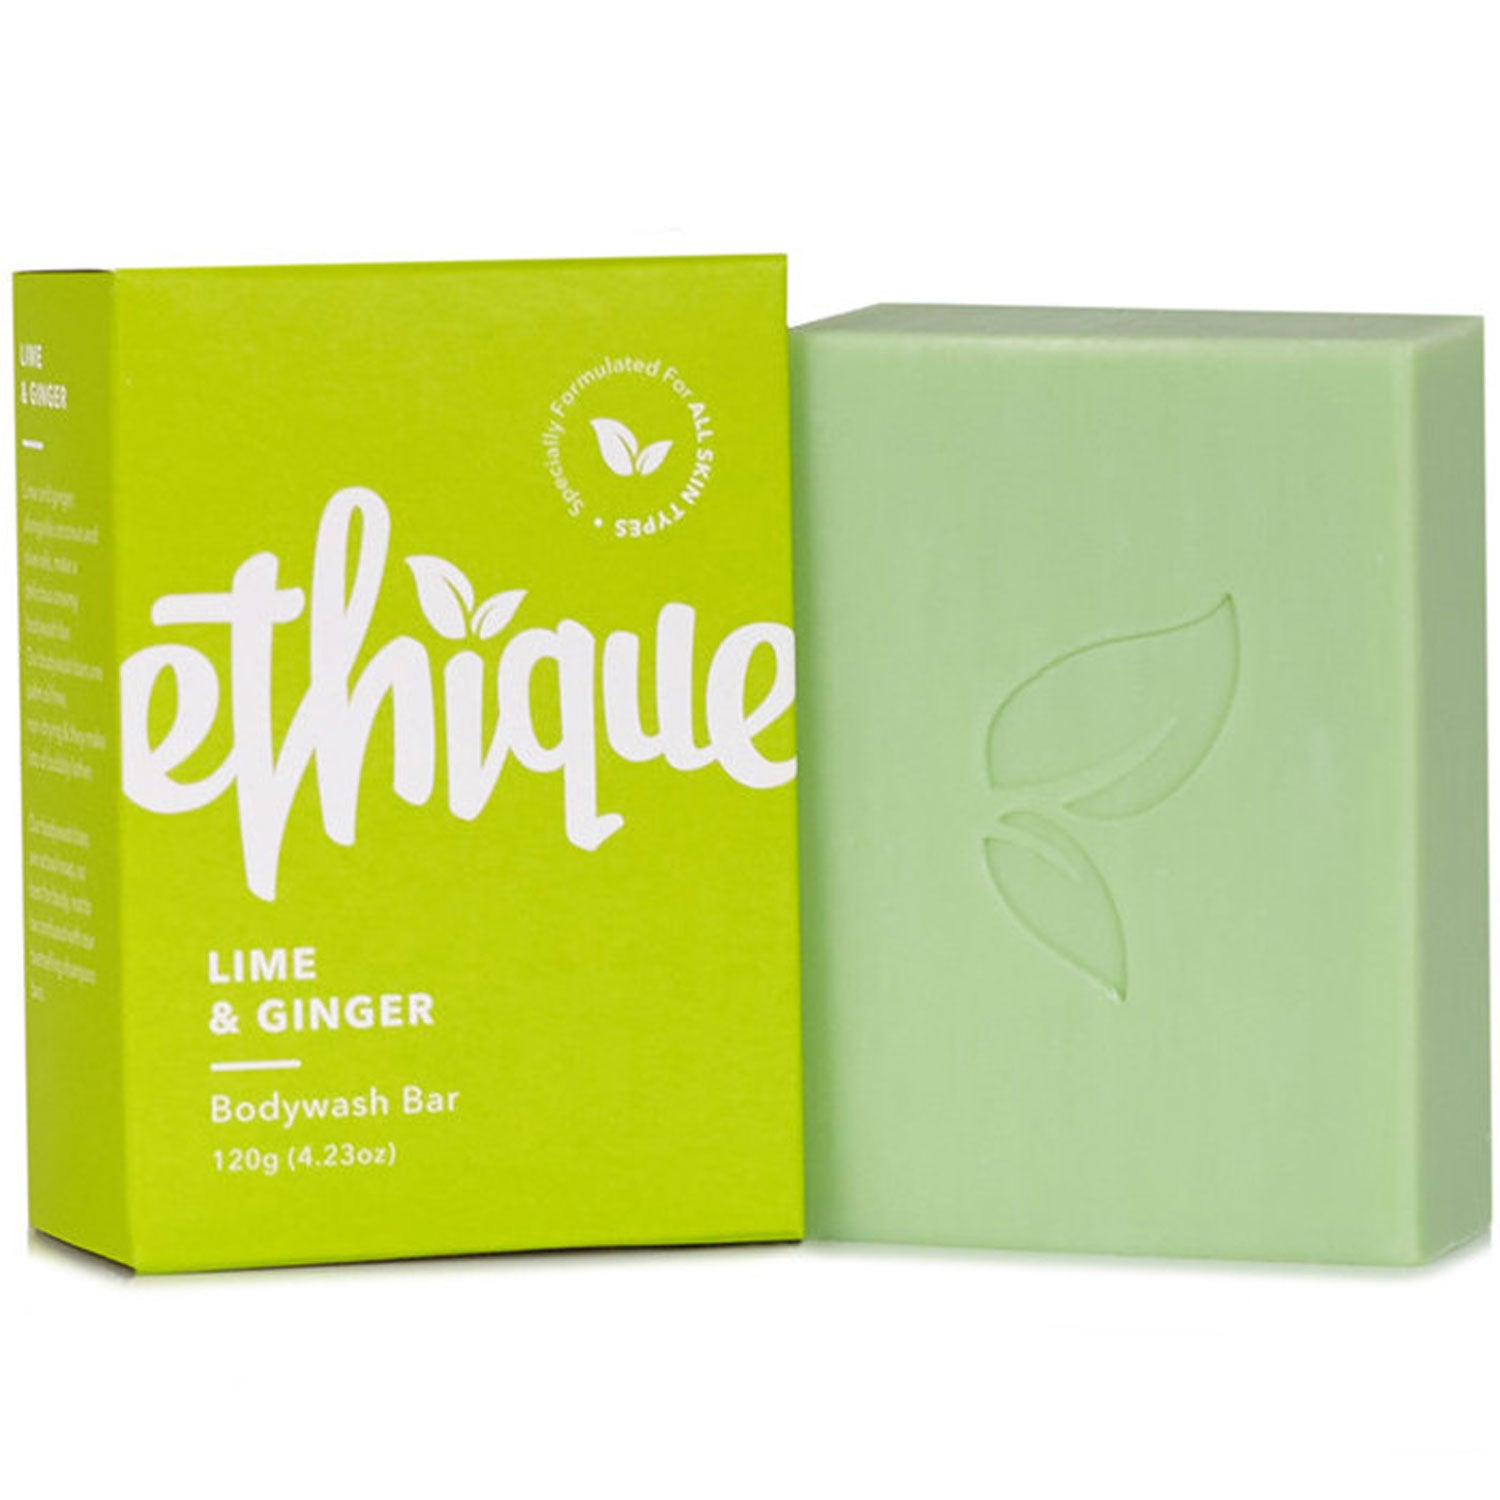 Ethique Lime & Ginger Bodywash Bar 120g - Orcadia